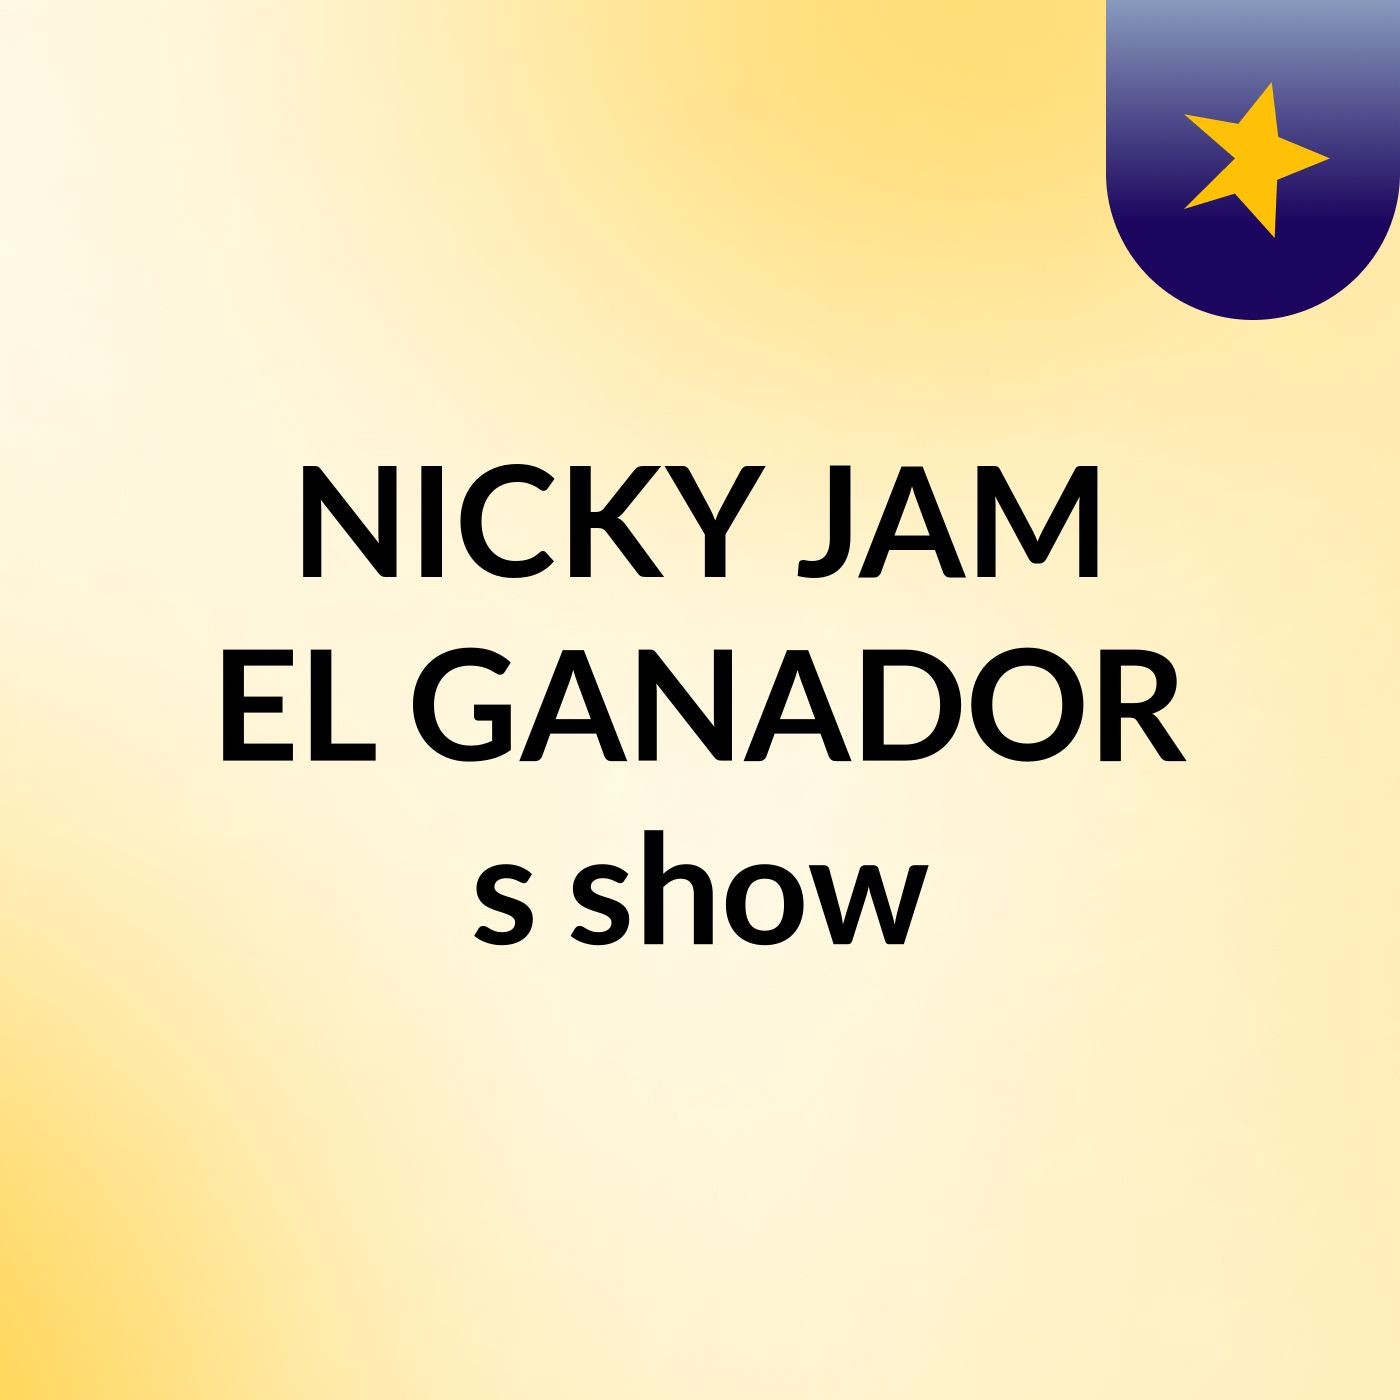 NICKY JAM EL GANADOR's show